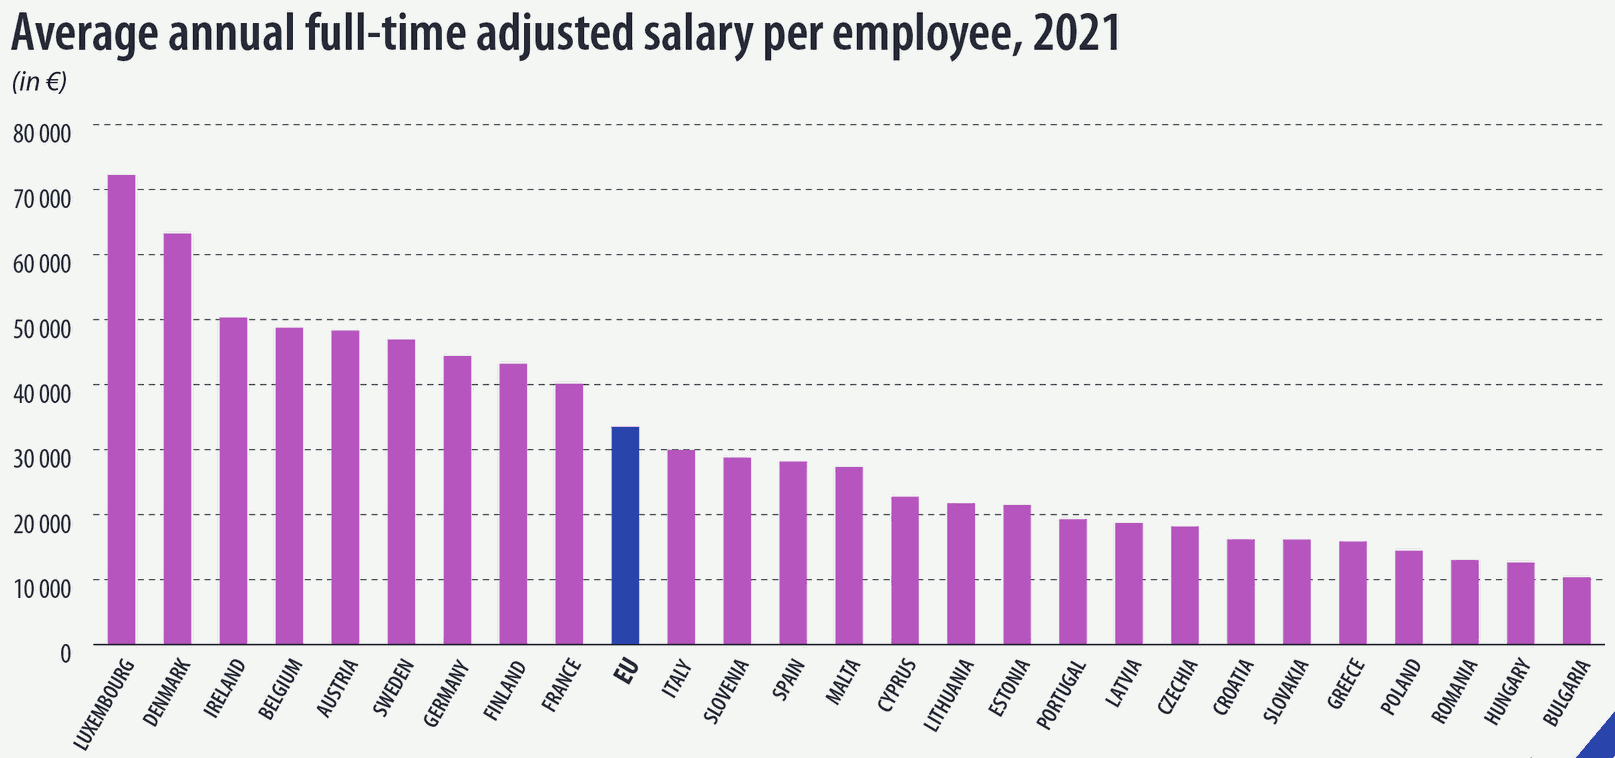 Átlagos évi kiigazított főállású fizetés EU tagországokban, 21